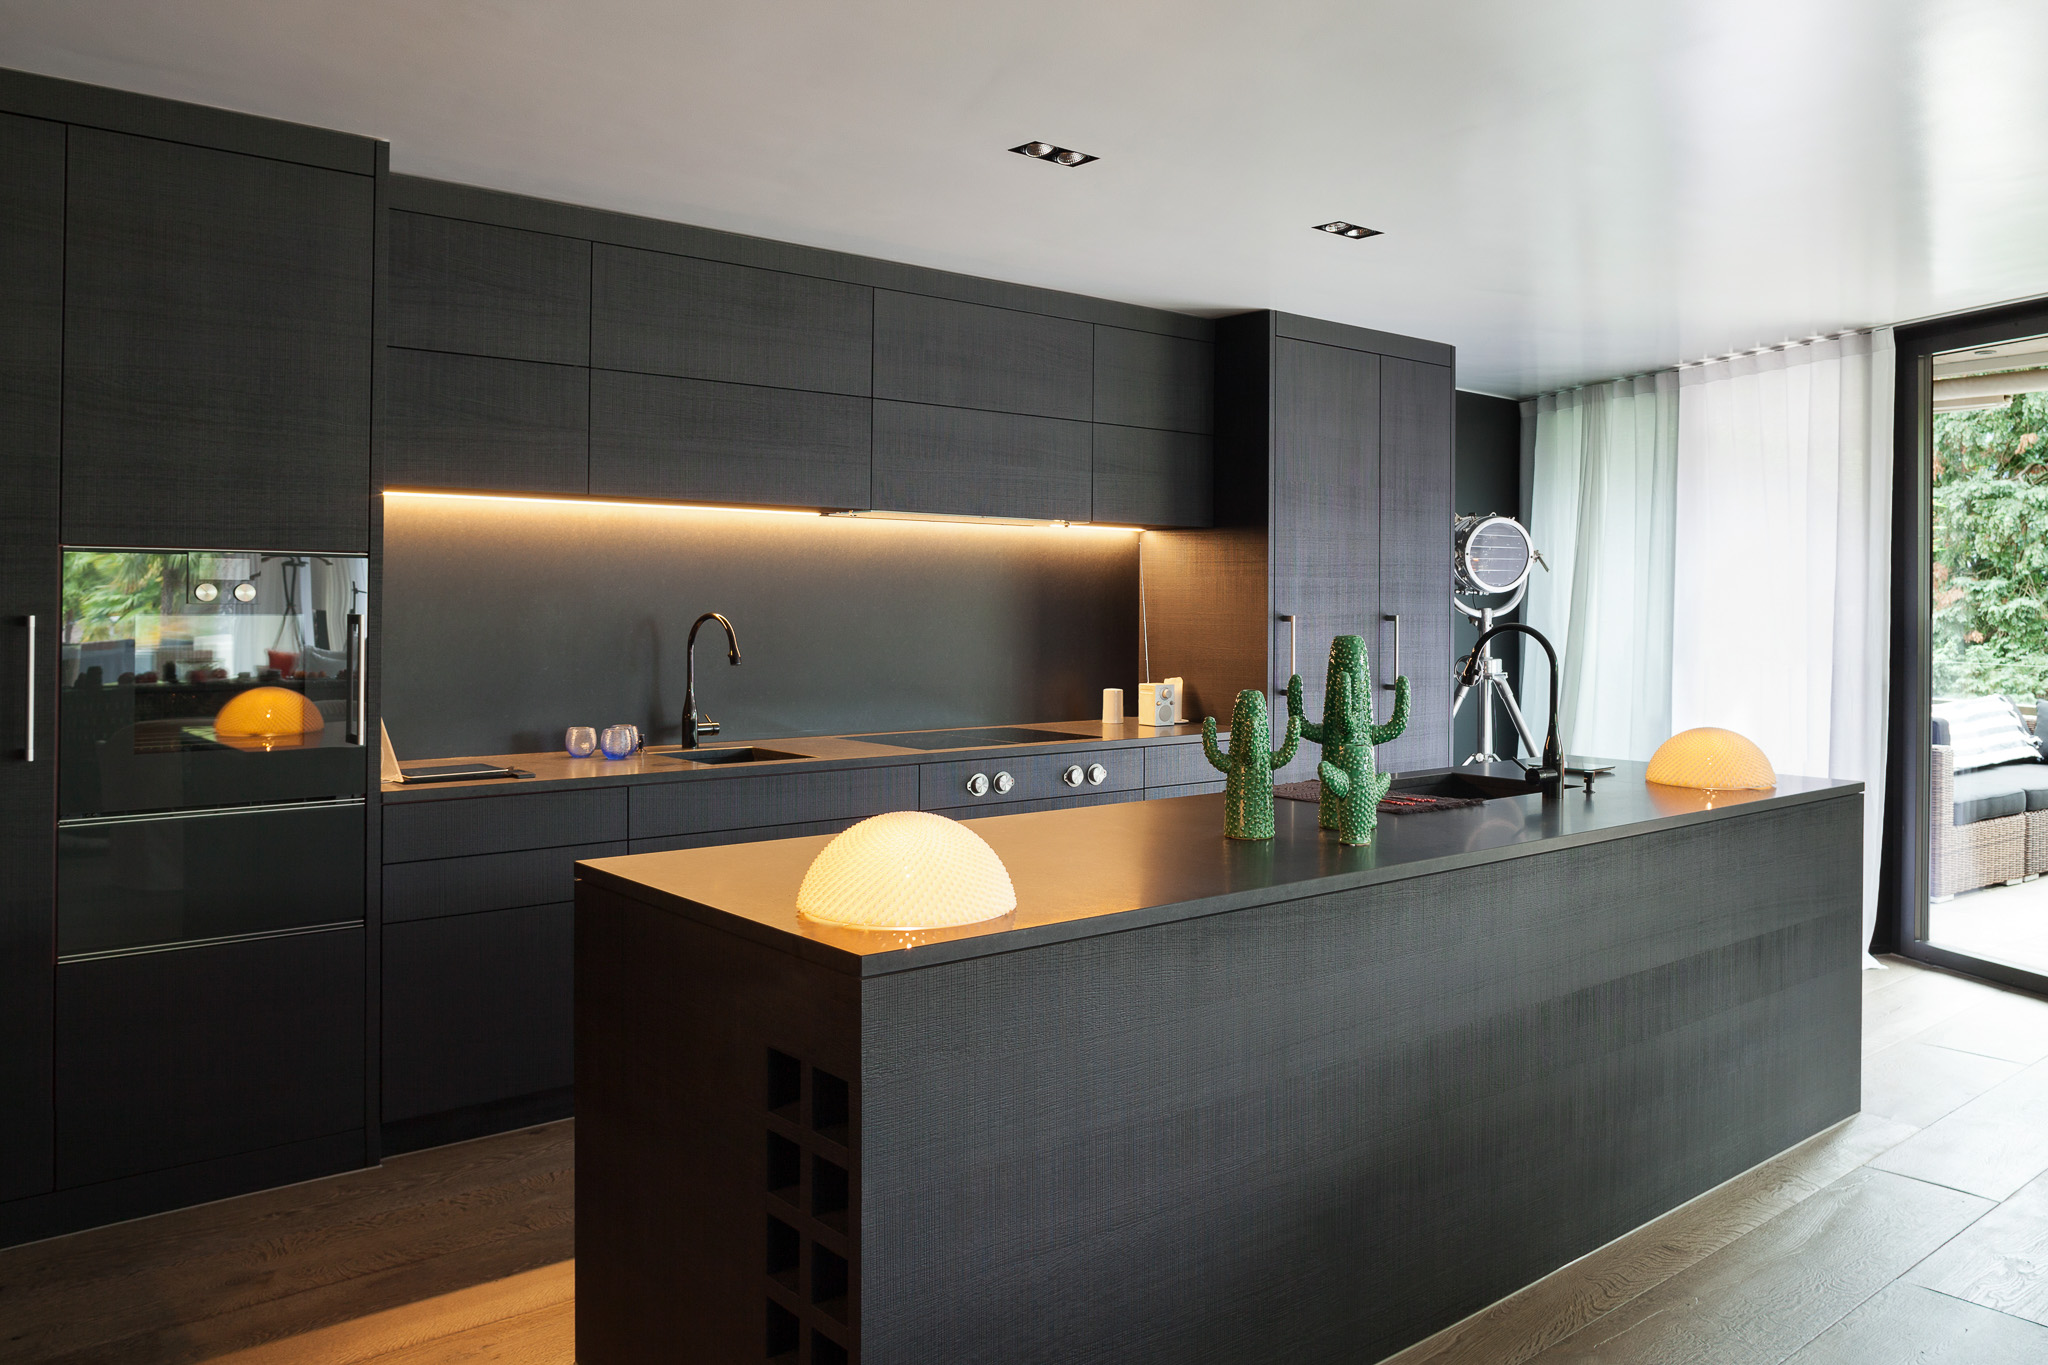 Modern kitchen with black furniture